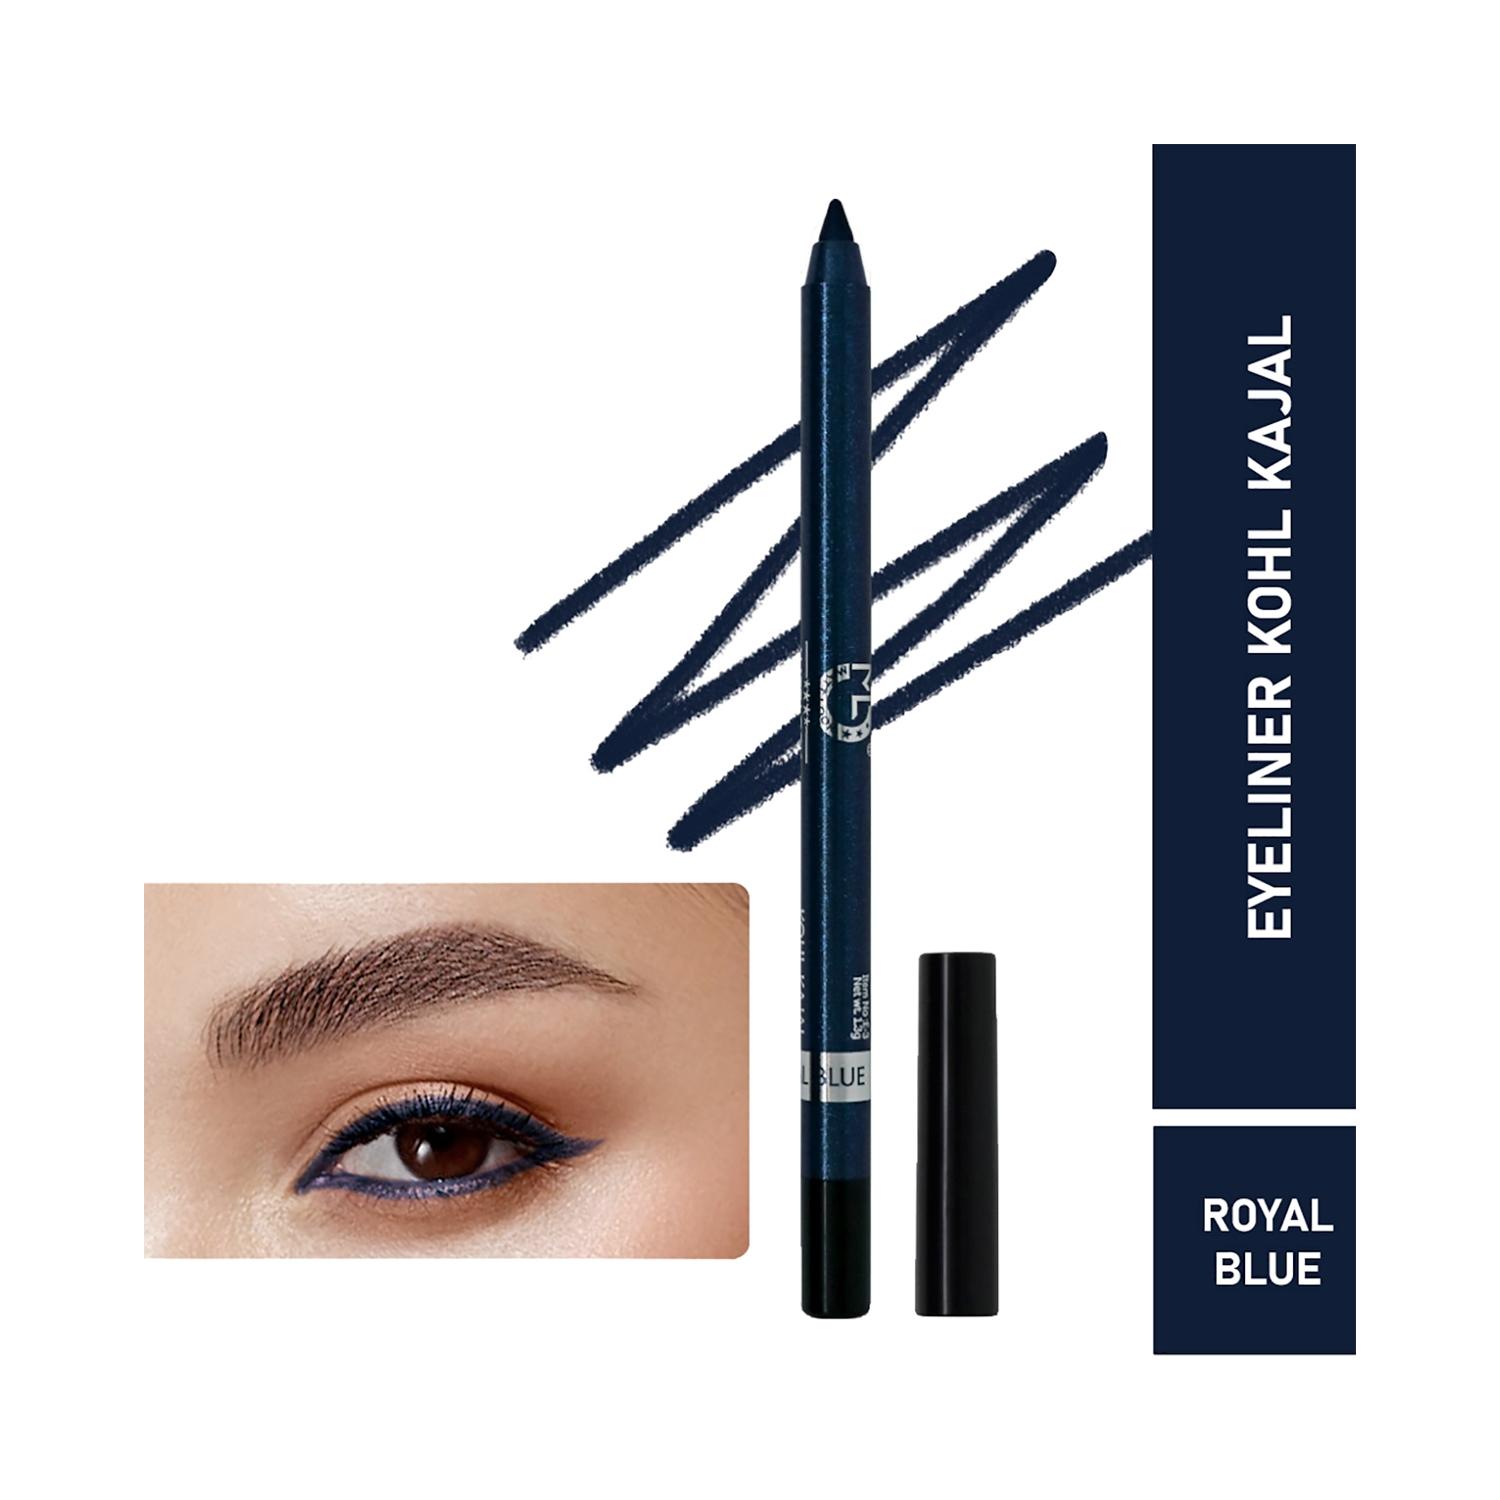 matt look single stroke super glide eyeliner kohl kajal - royal blue (1.3g)